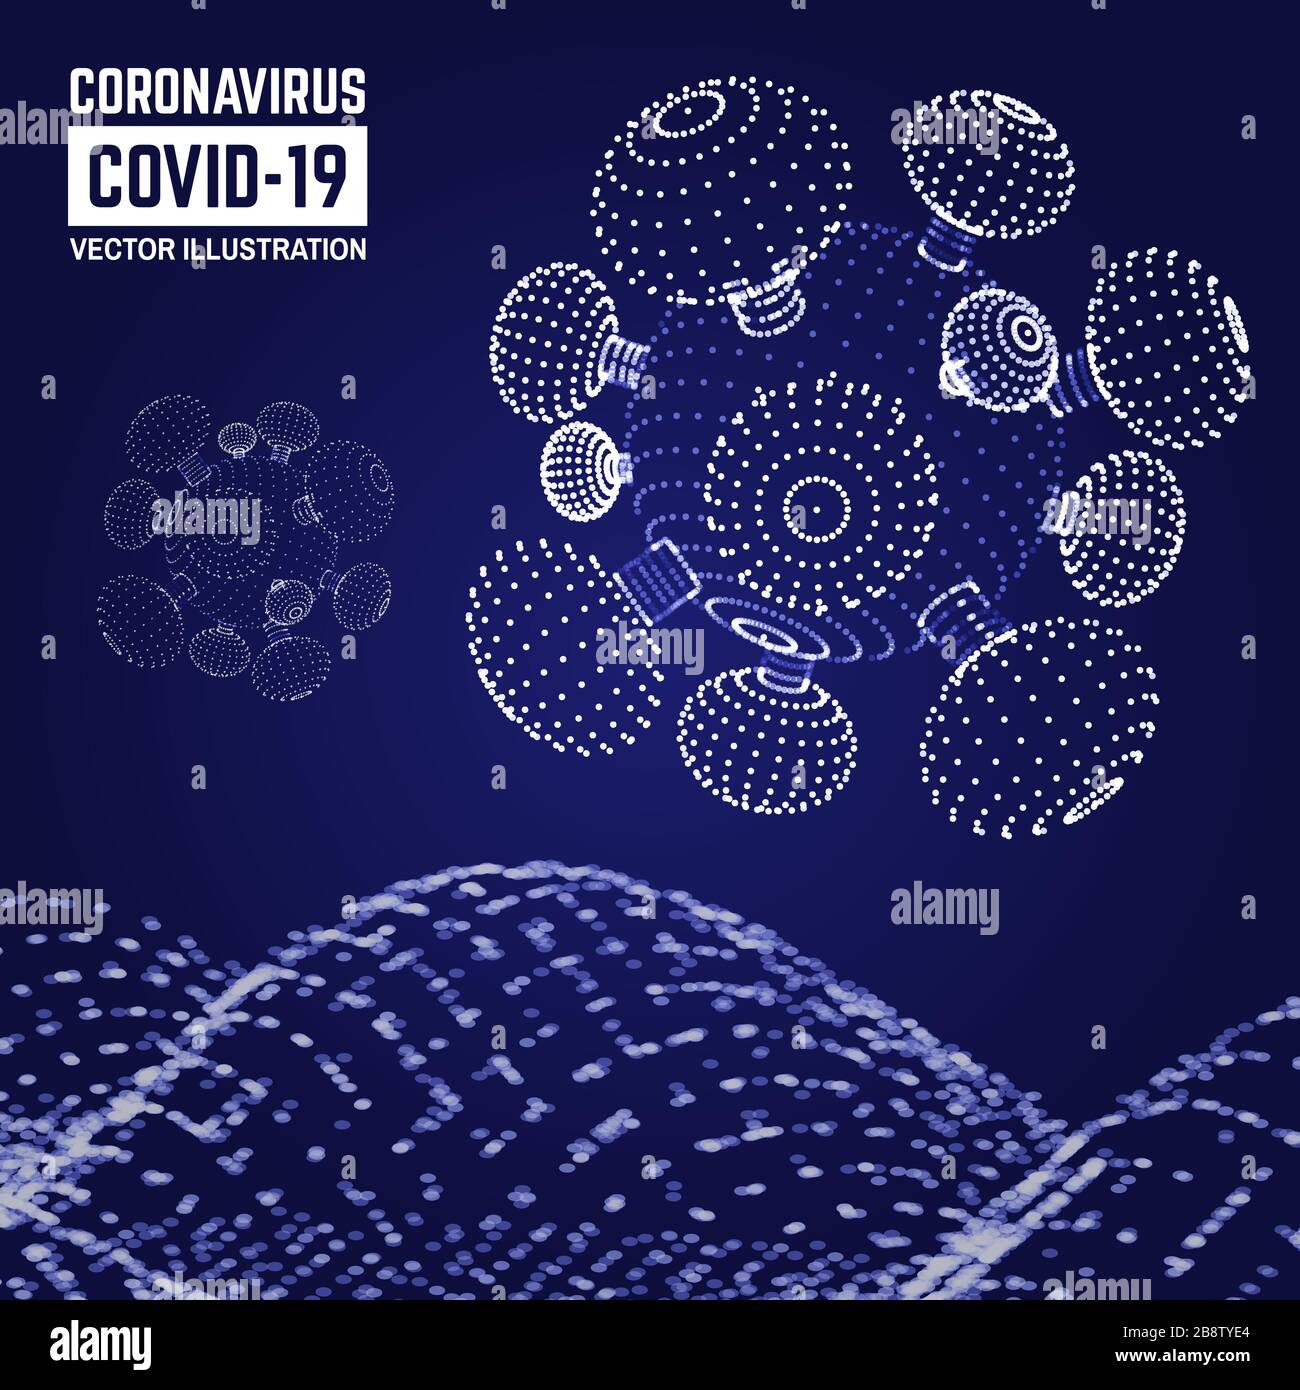 Analyse visuelle Coronavirus Covid-19. Illustration vectorielle. Visualisations dynamiques avec points de connexion et forme poly basse. Signe du virus Corona. 2019-virus nvoc isolé. Illustration de Vecteur